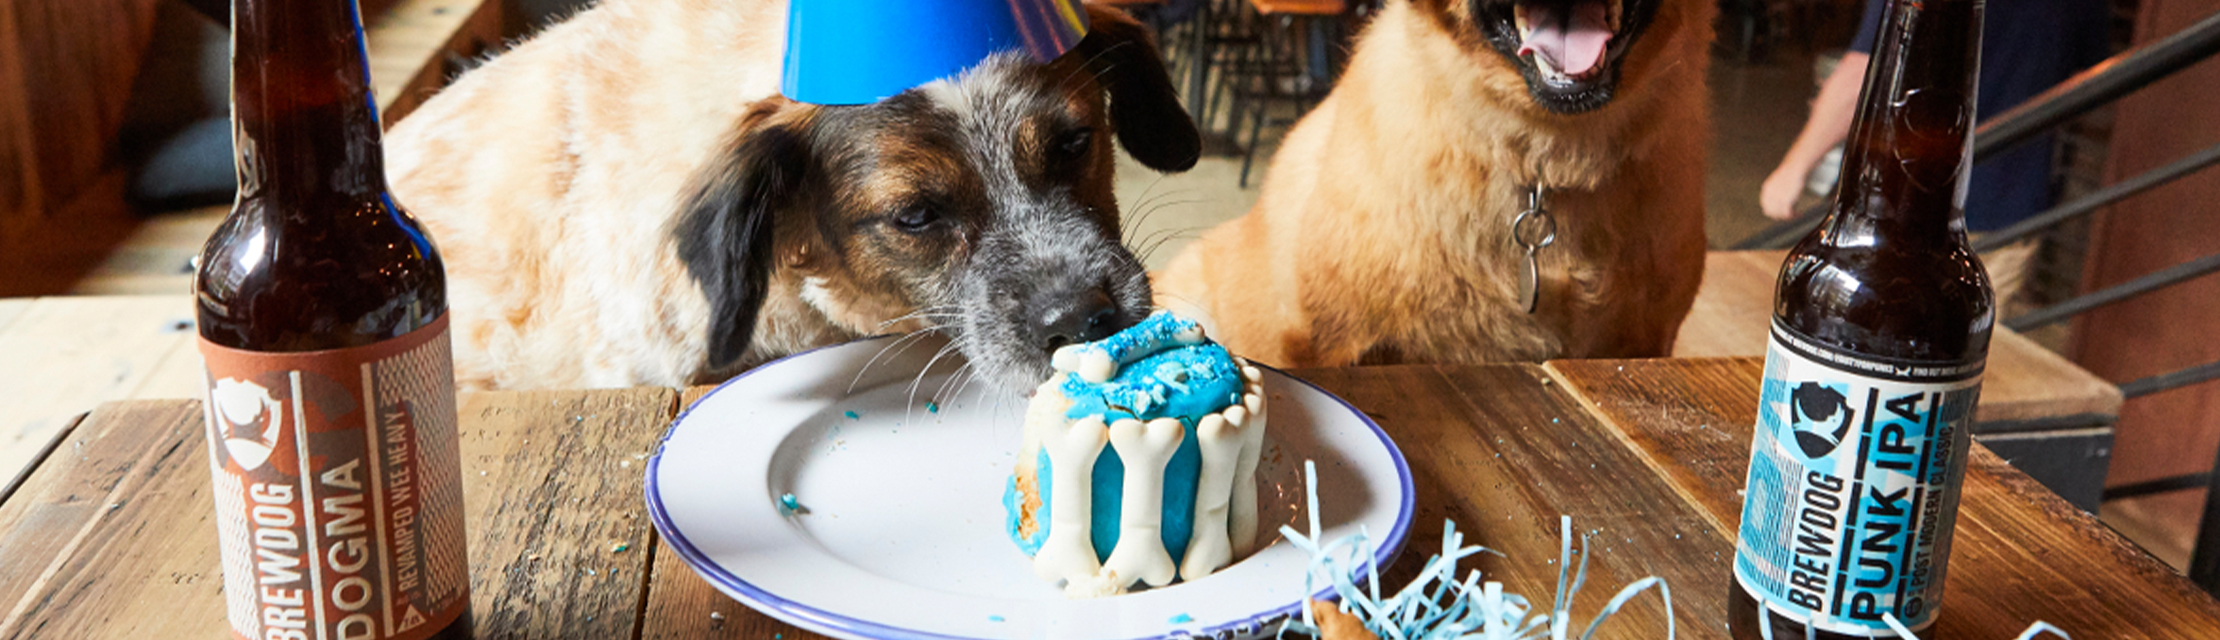 brewdog dog birthday party